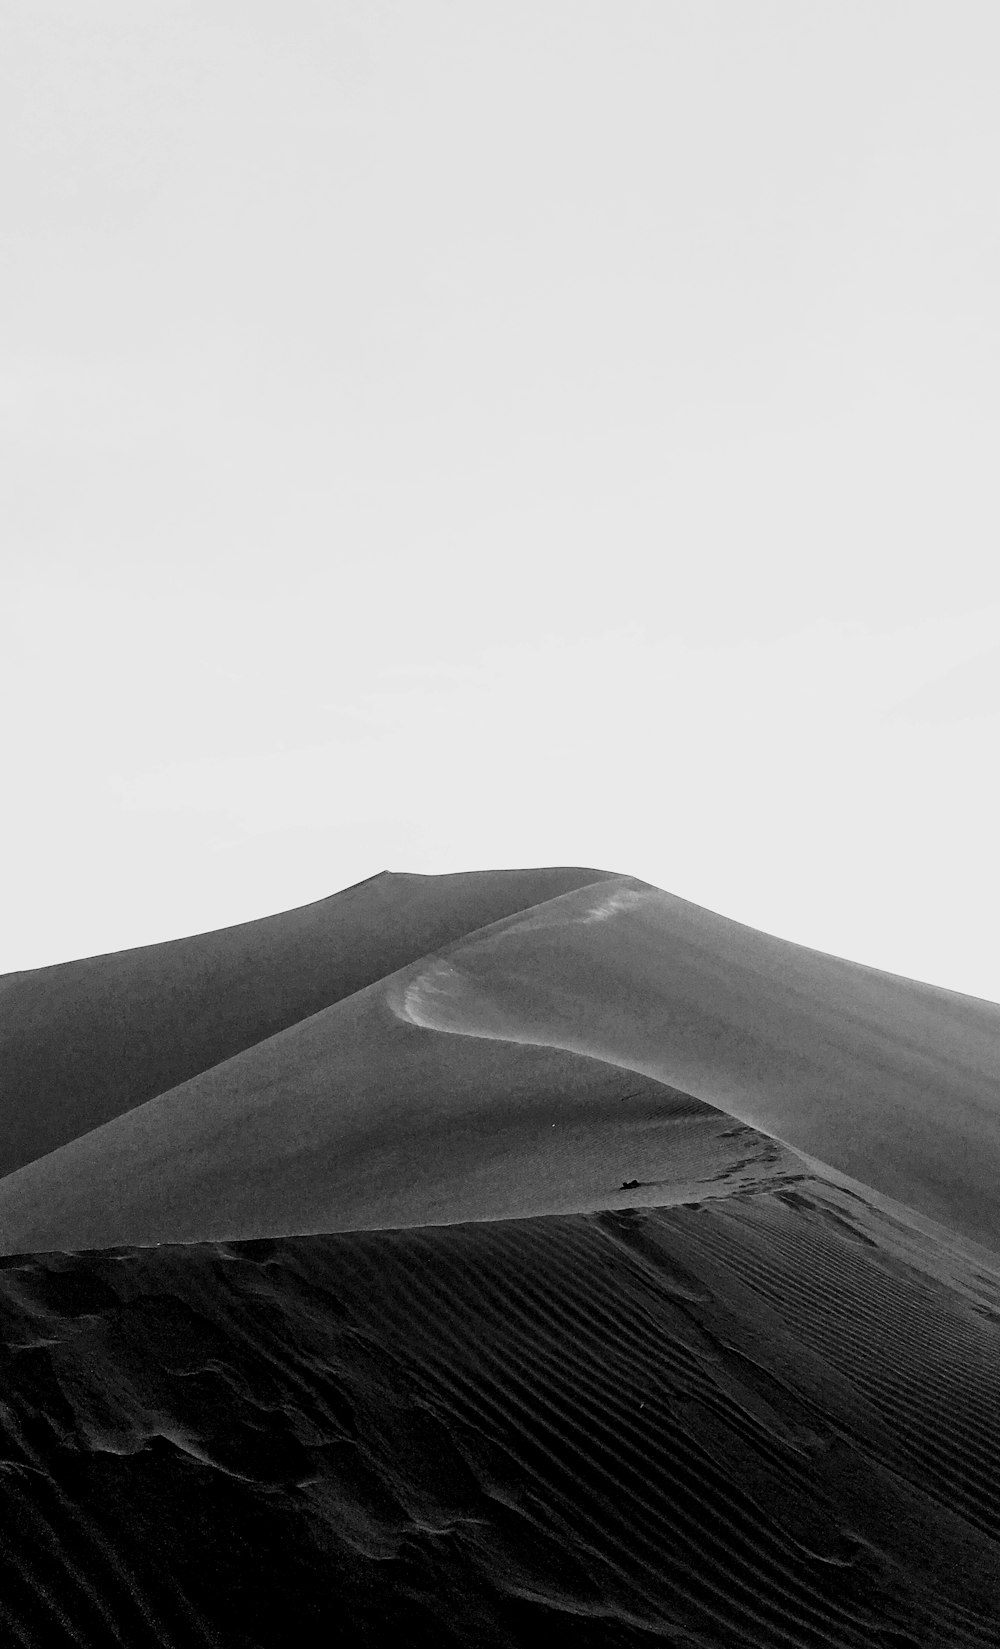 흐린 하늘 아래 사막의 그레이스케일 사진